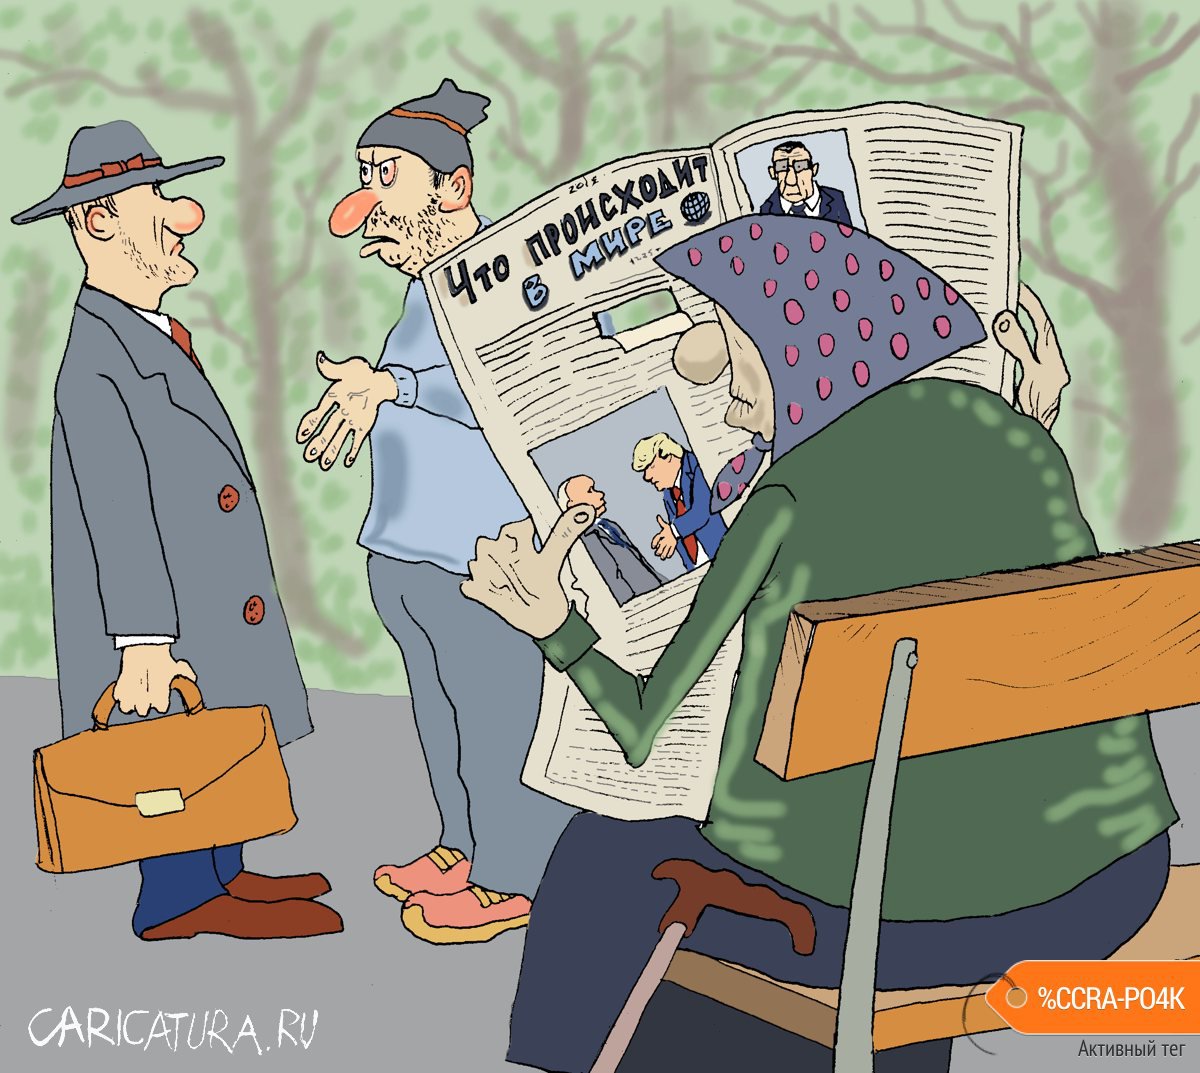 Карикатура "Что происходит в мире", Булат Ирсаев